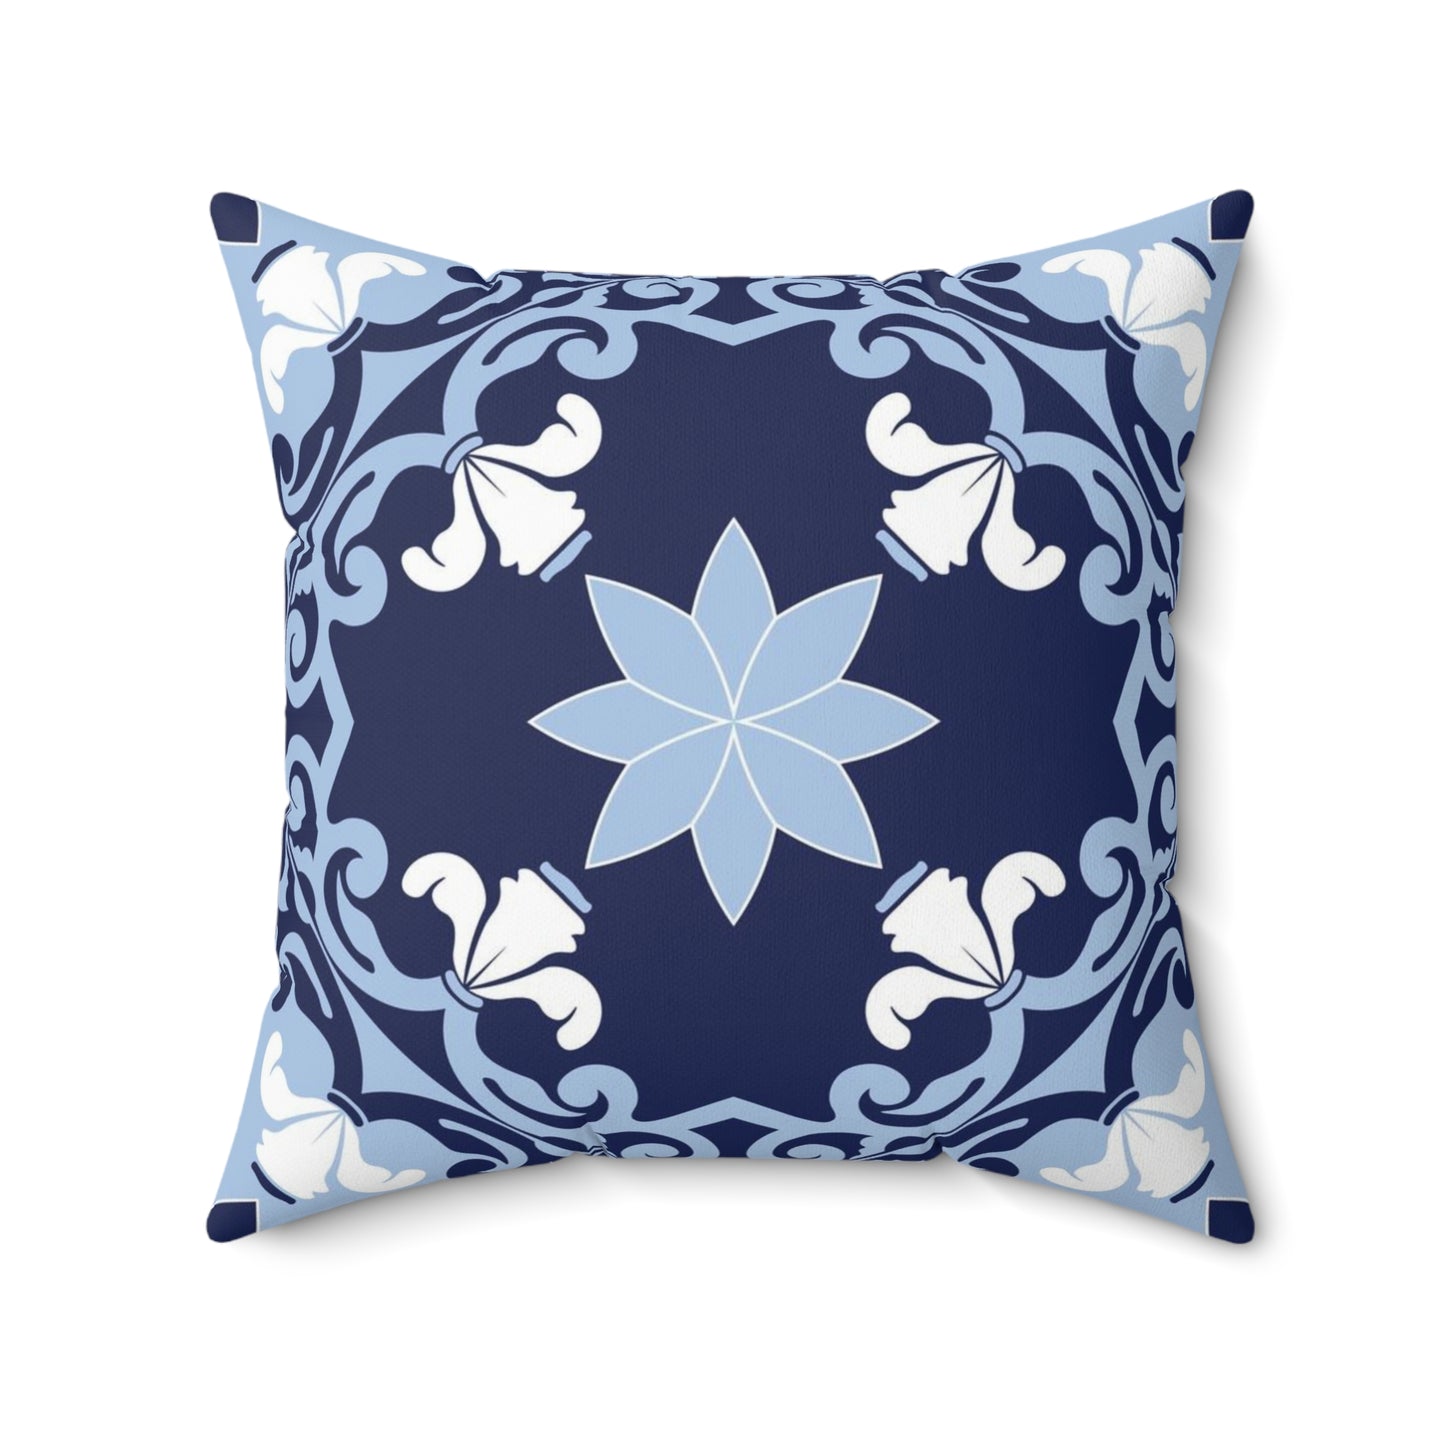 Greek Islands Deep Blue Decorative Pillow Cover